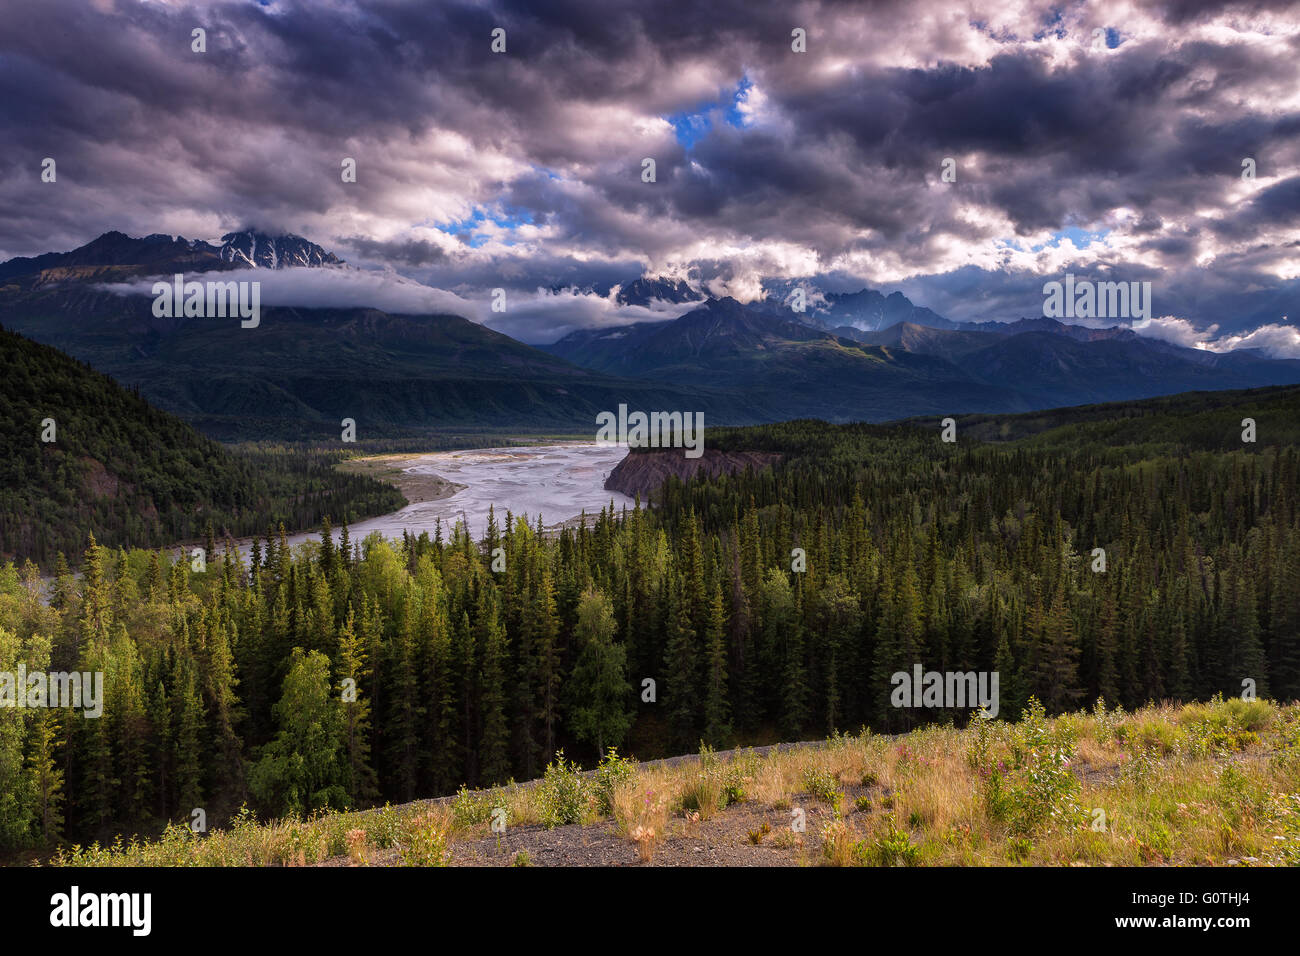 The Matanuska River on a cloudy summer evening. Matanuska Valley, Alaska, USA. Stock Photo